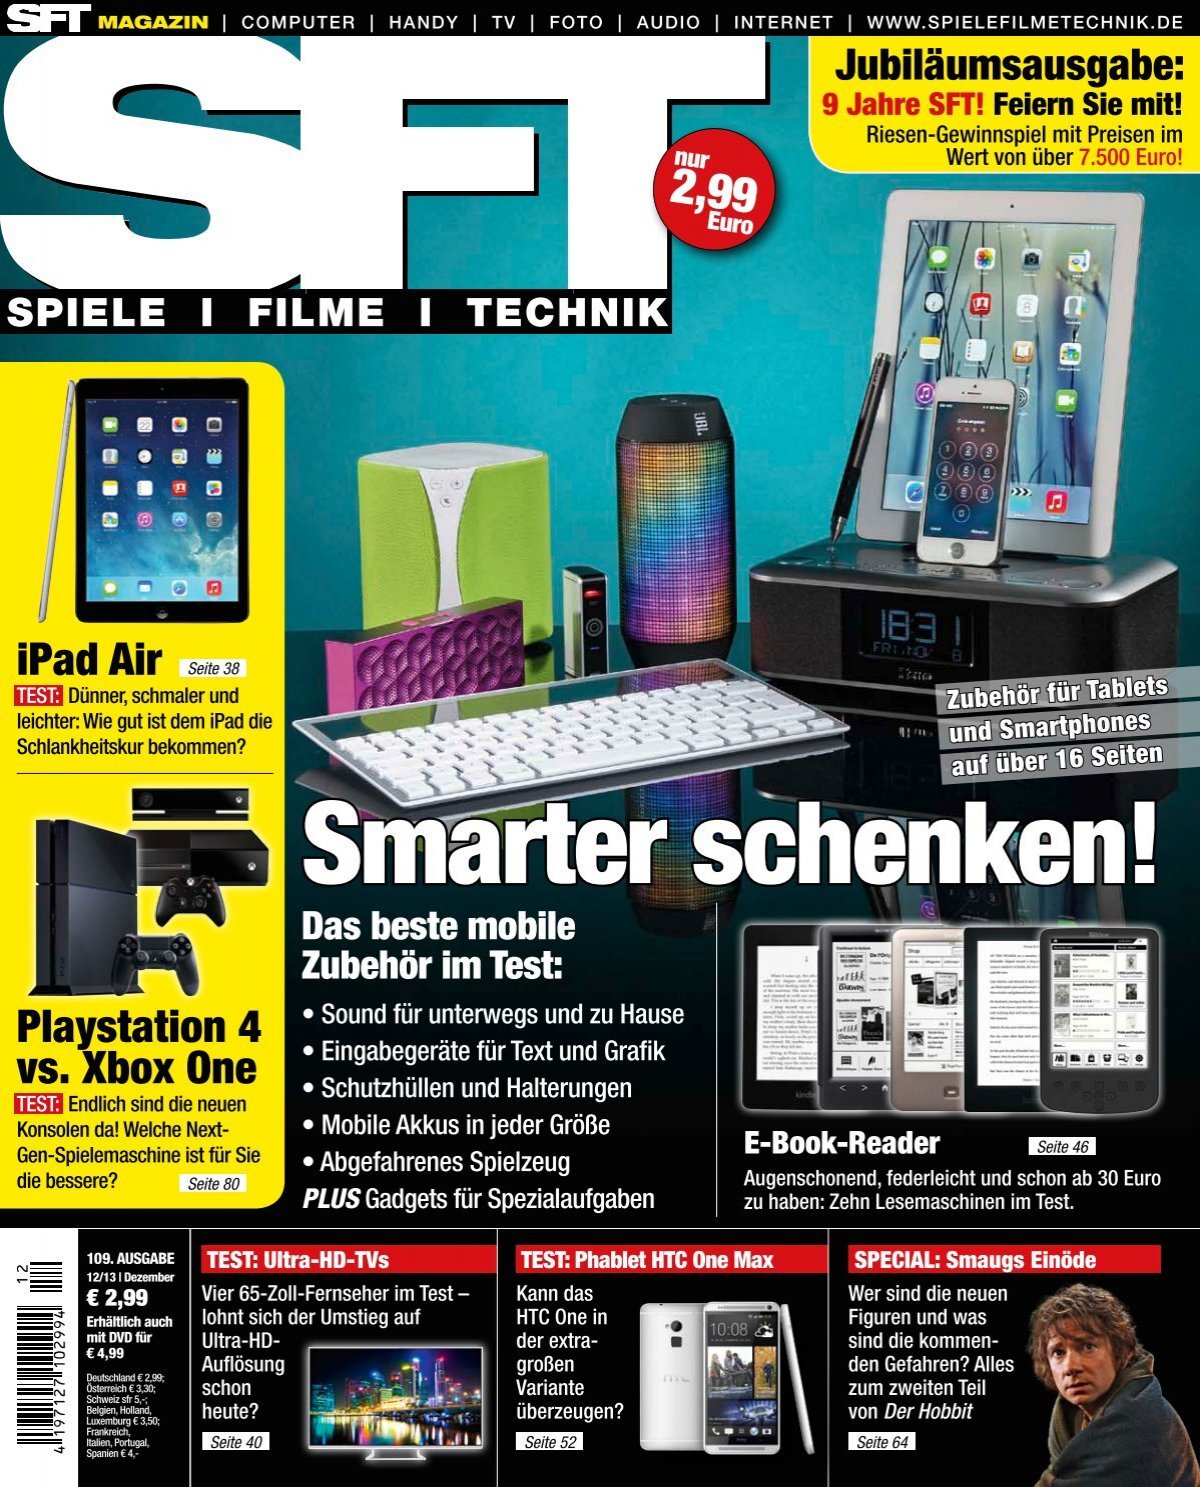 SFT – Spiele Filme Technik - Magazin Smarter schenken! (Vorschau)